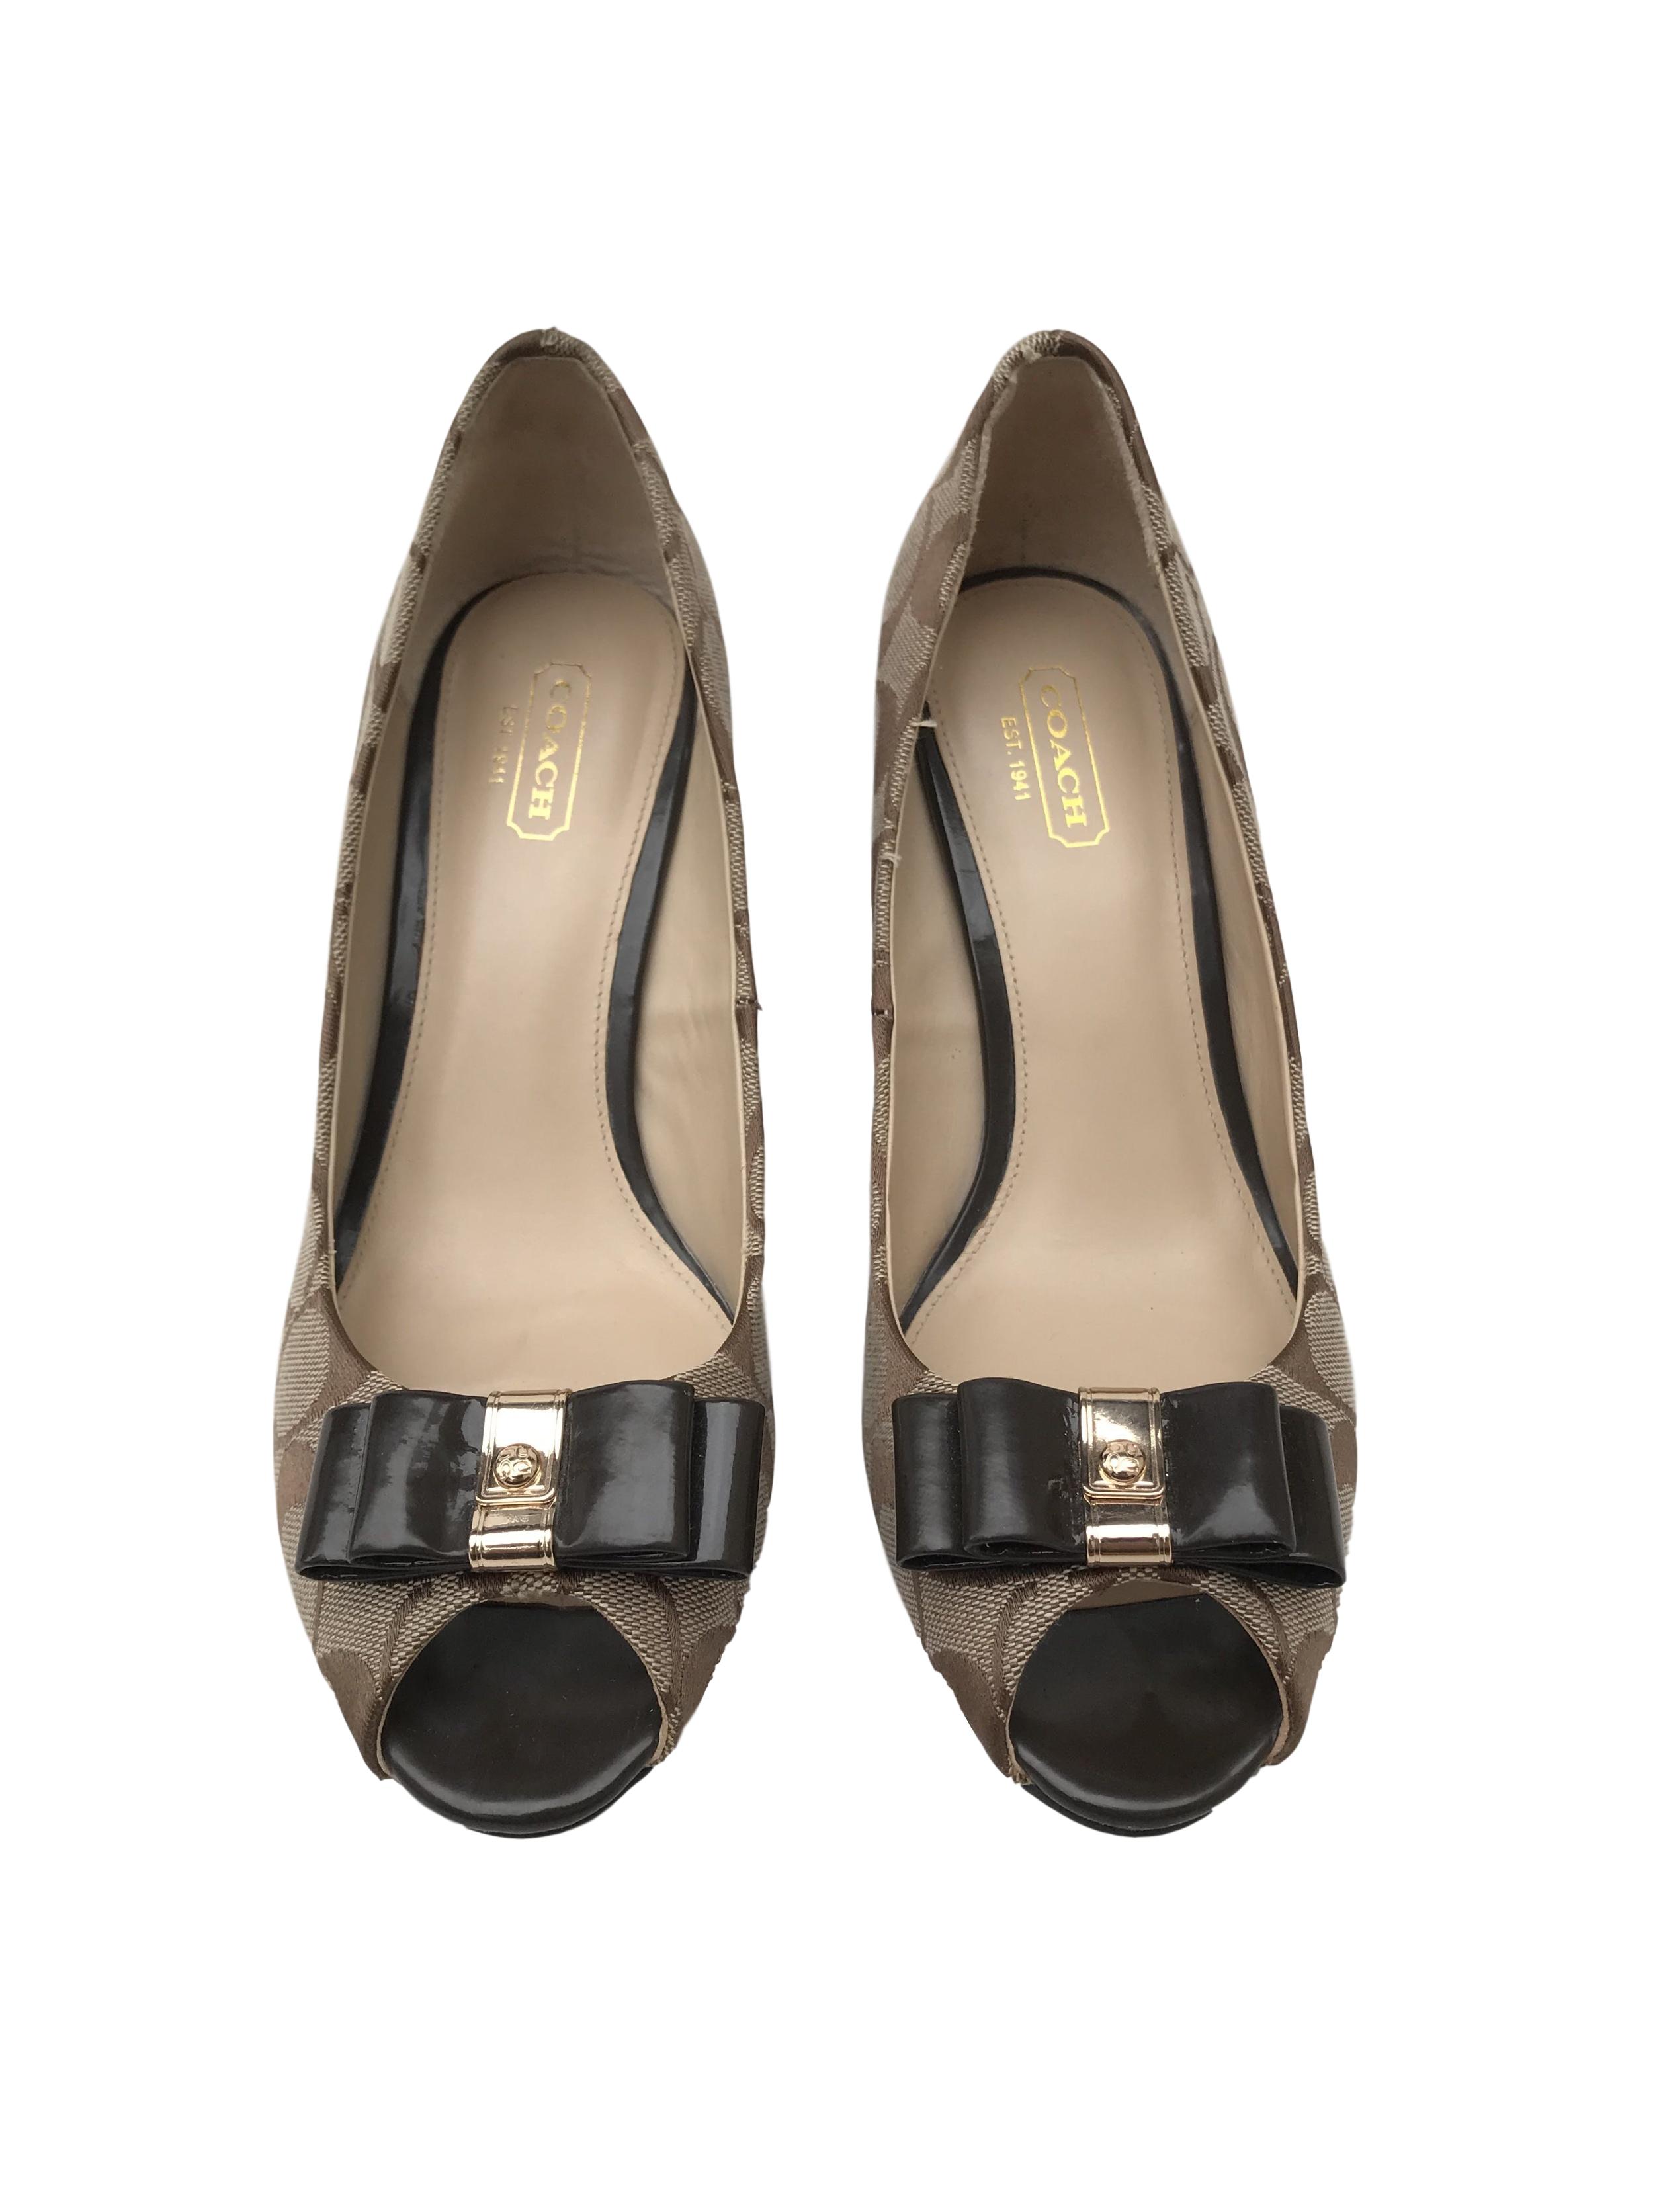 Zapatos Coach "Emma" peep toe monograma con lacito delantero, taco cuña 9cm. Excelente estado, como nuevos 9.5/10. Precio original S/ 480